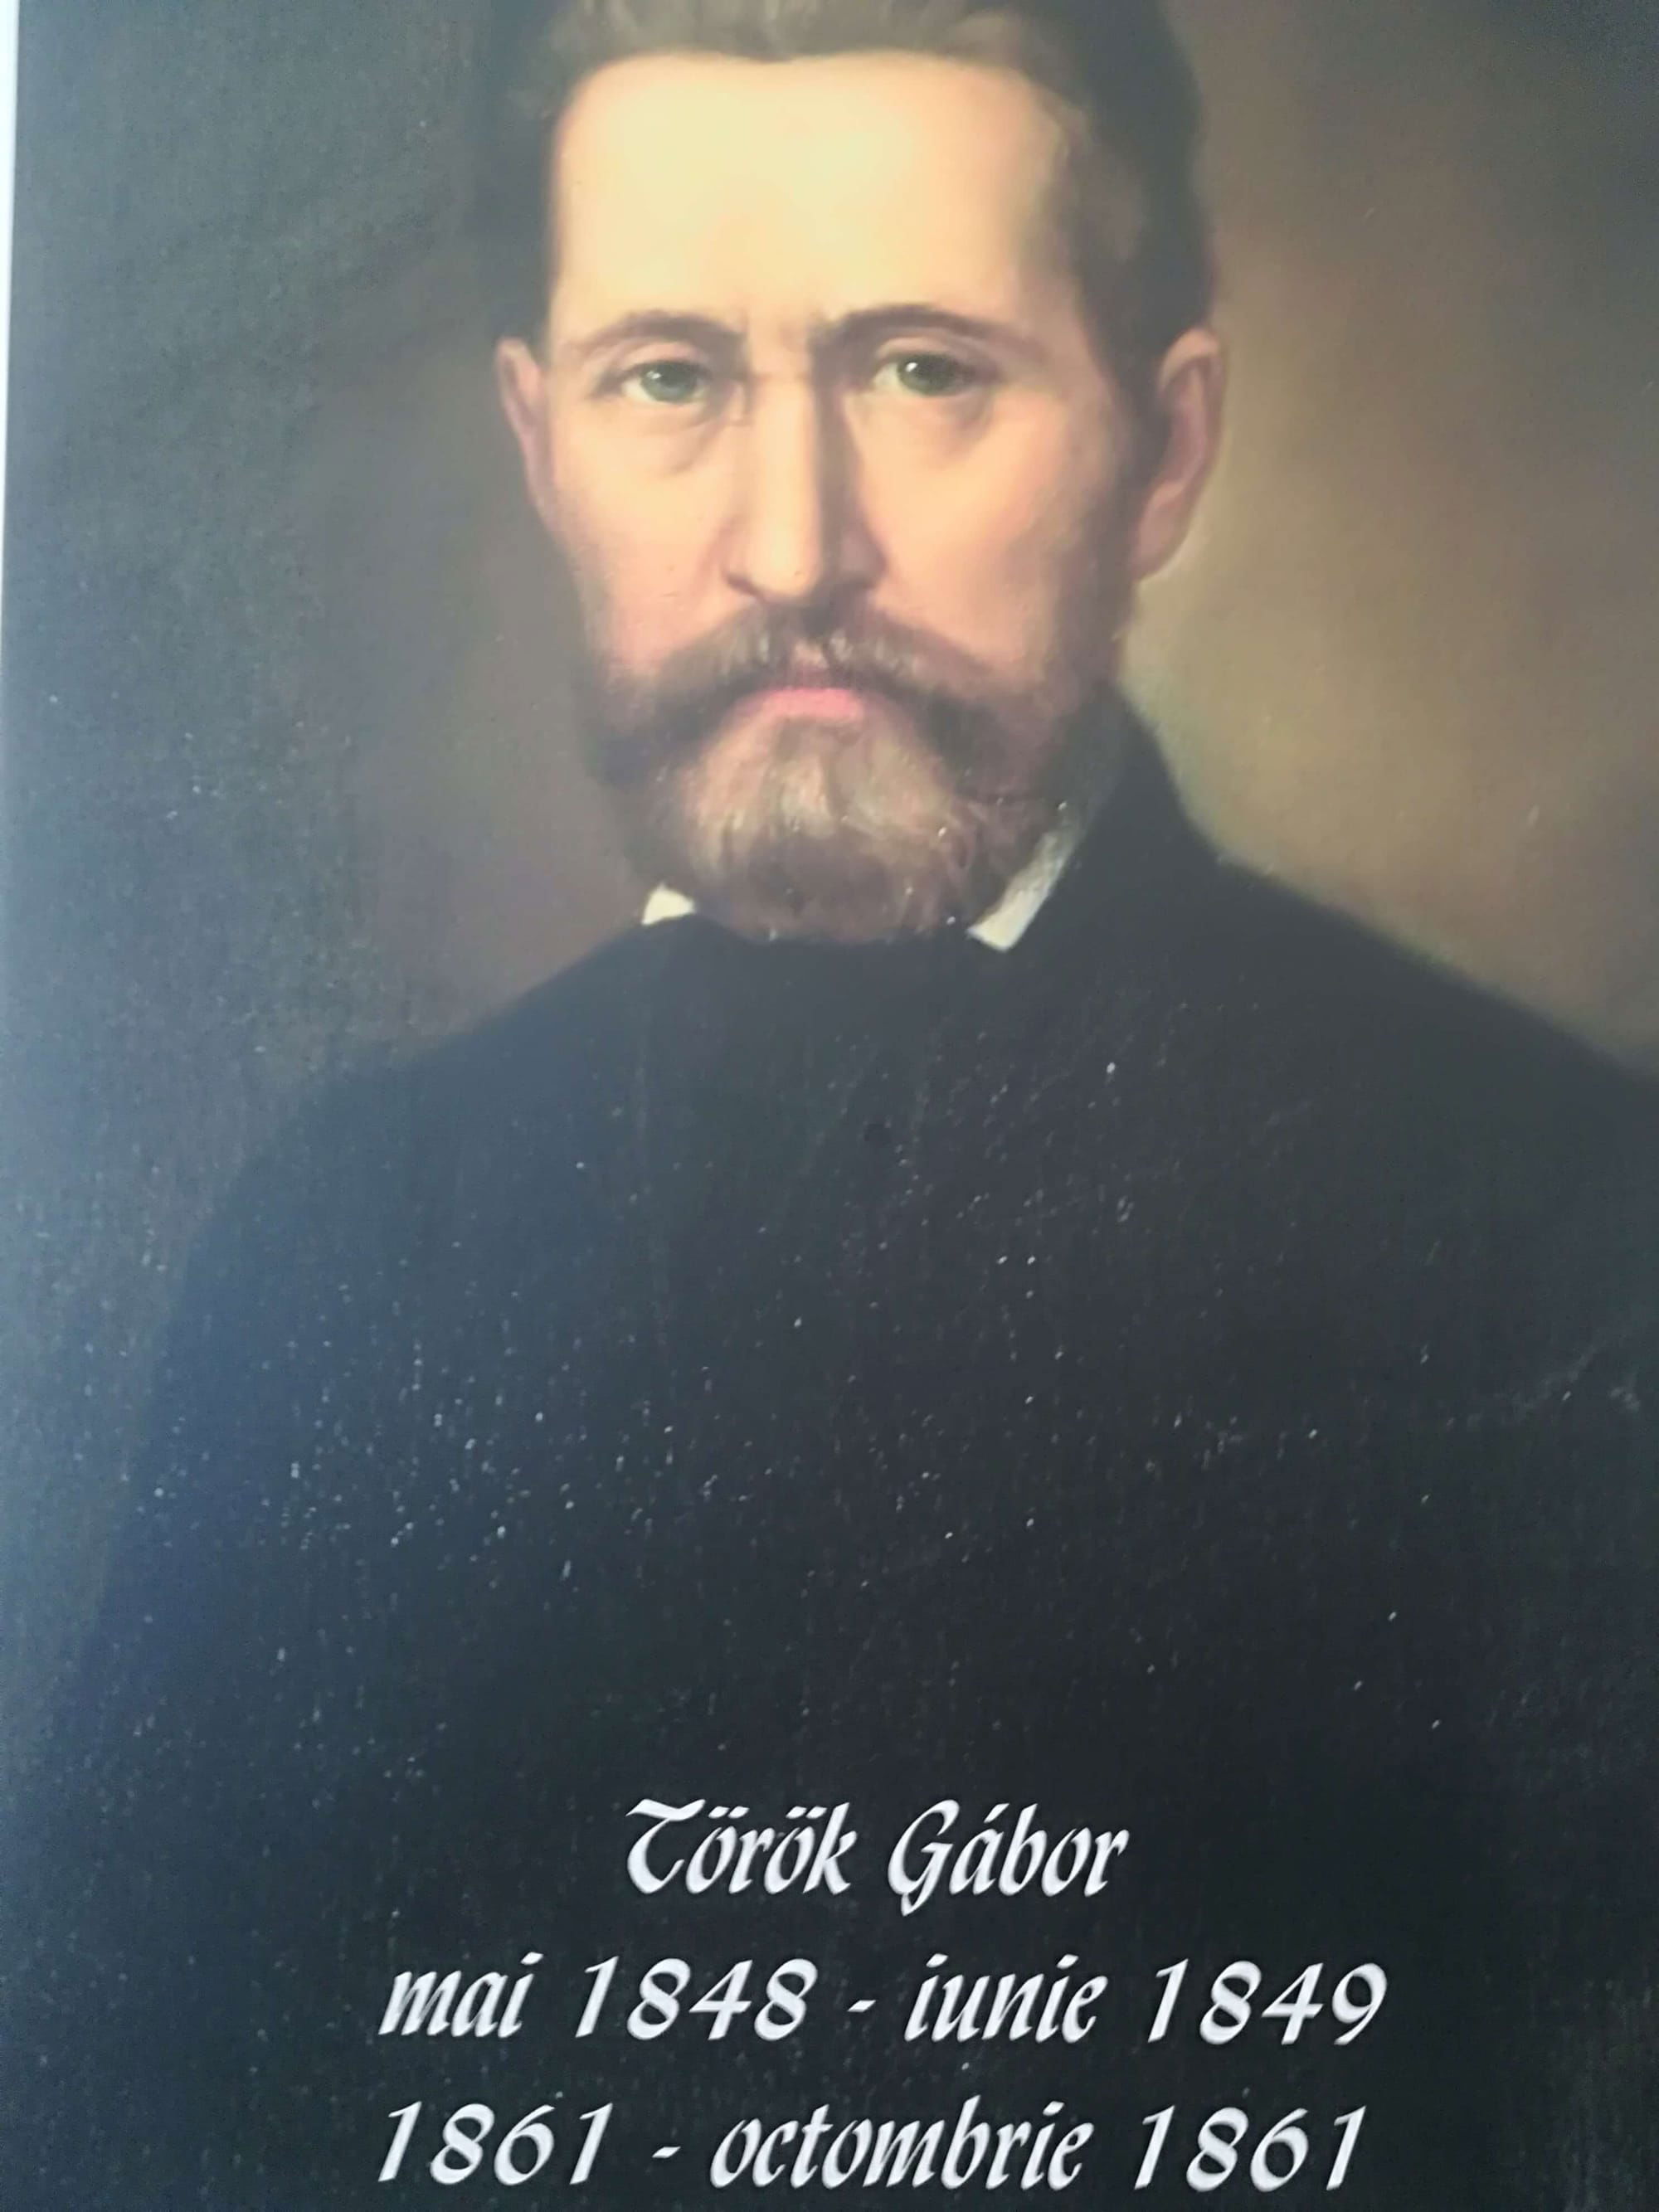 Török Gábor - primar 1848-1849 și 1861